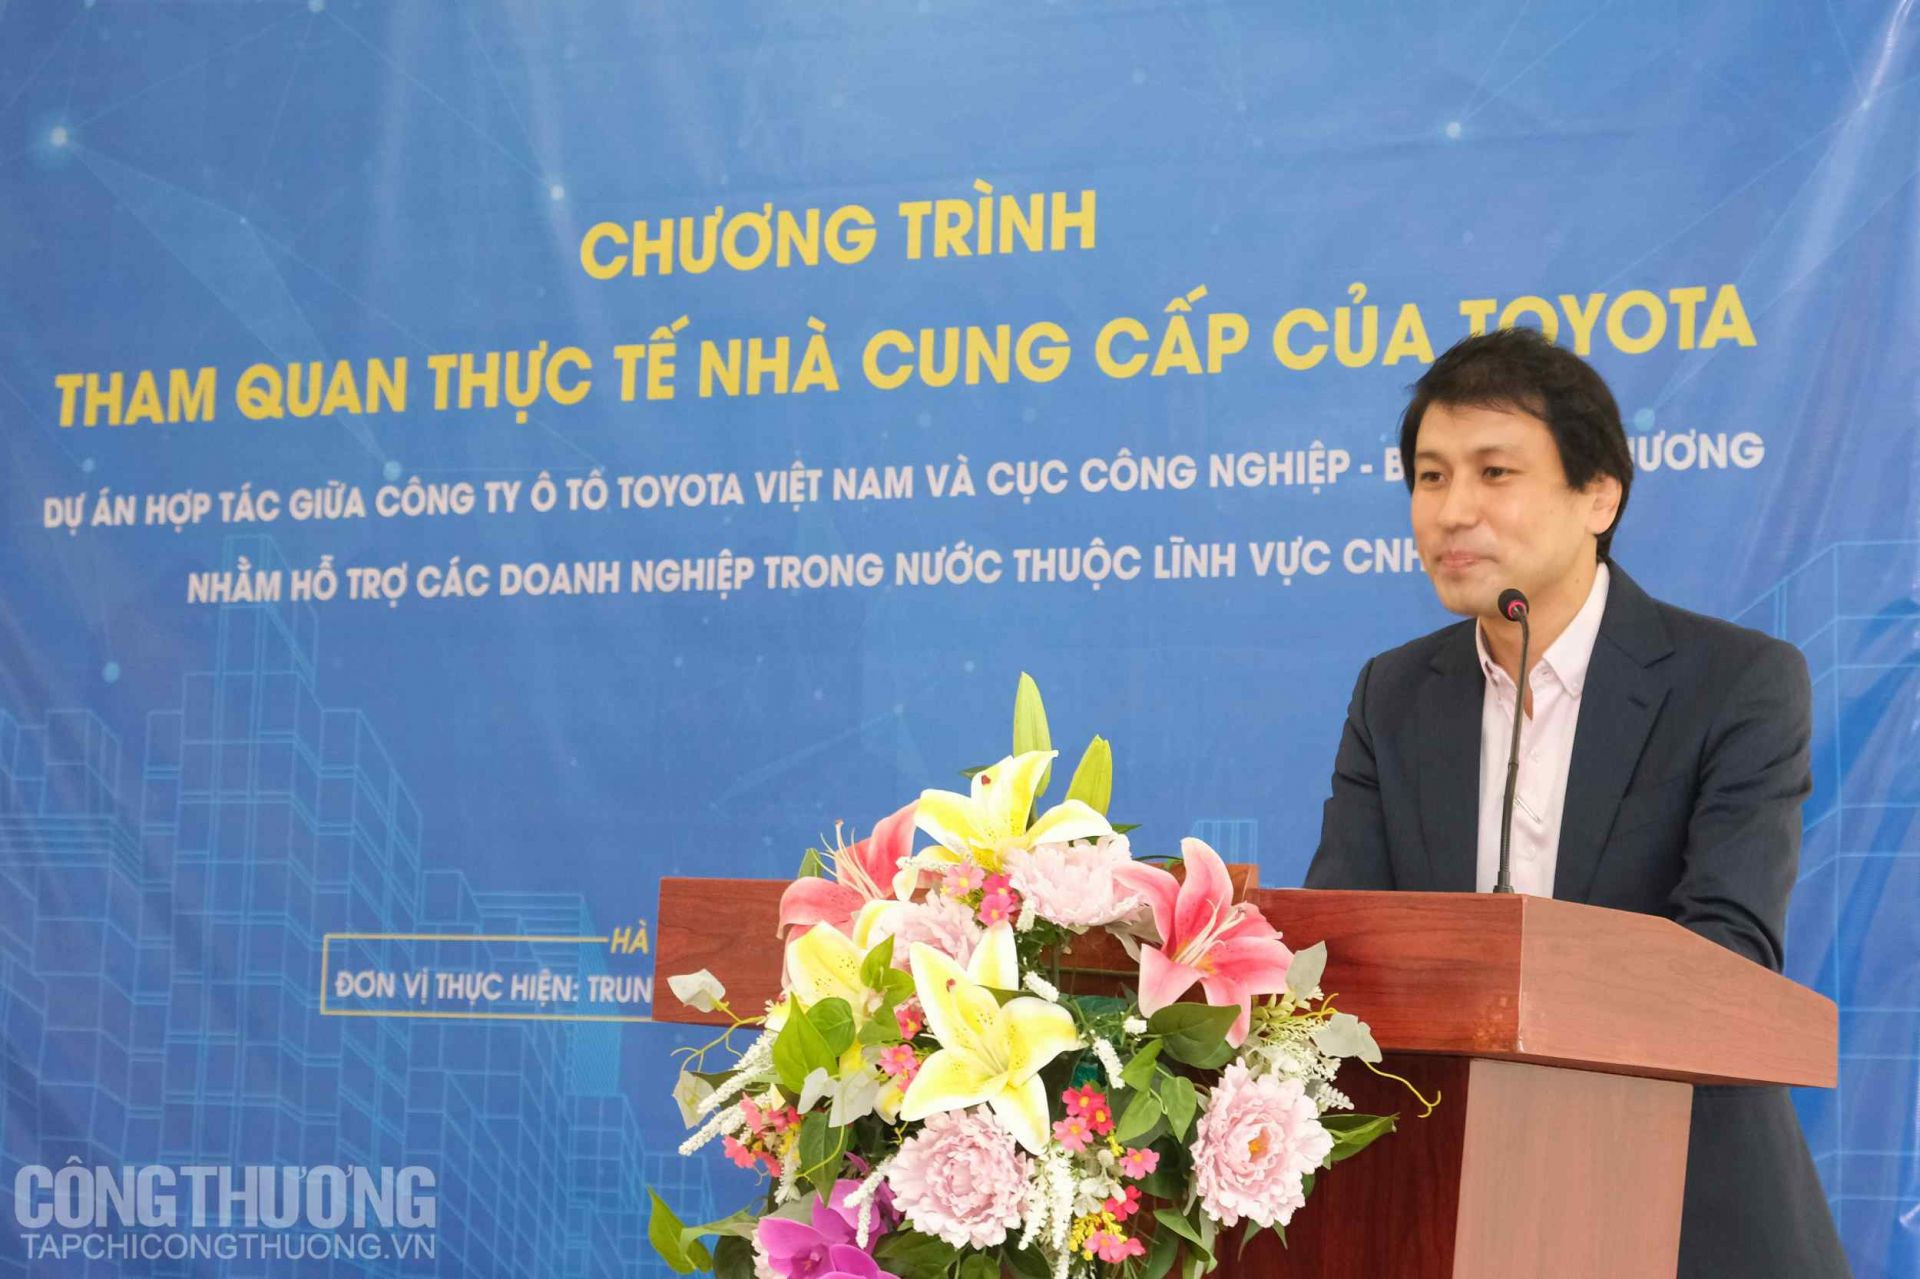 Ông Hiroshi Okamura - Phó Giám đốc Khối Kế hoạch bán hàng & Dịch vụ, Toyota Việt Nam